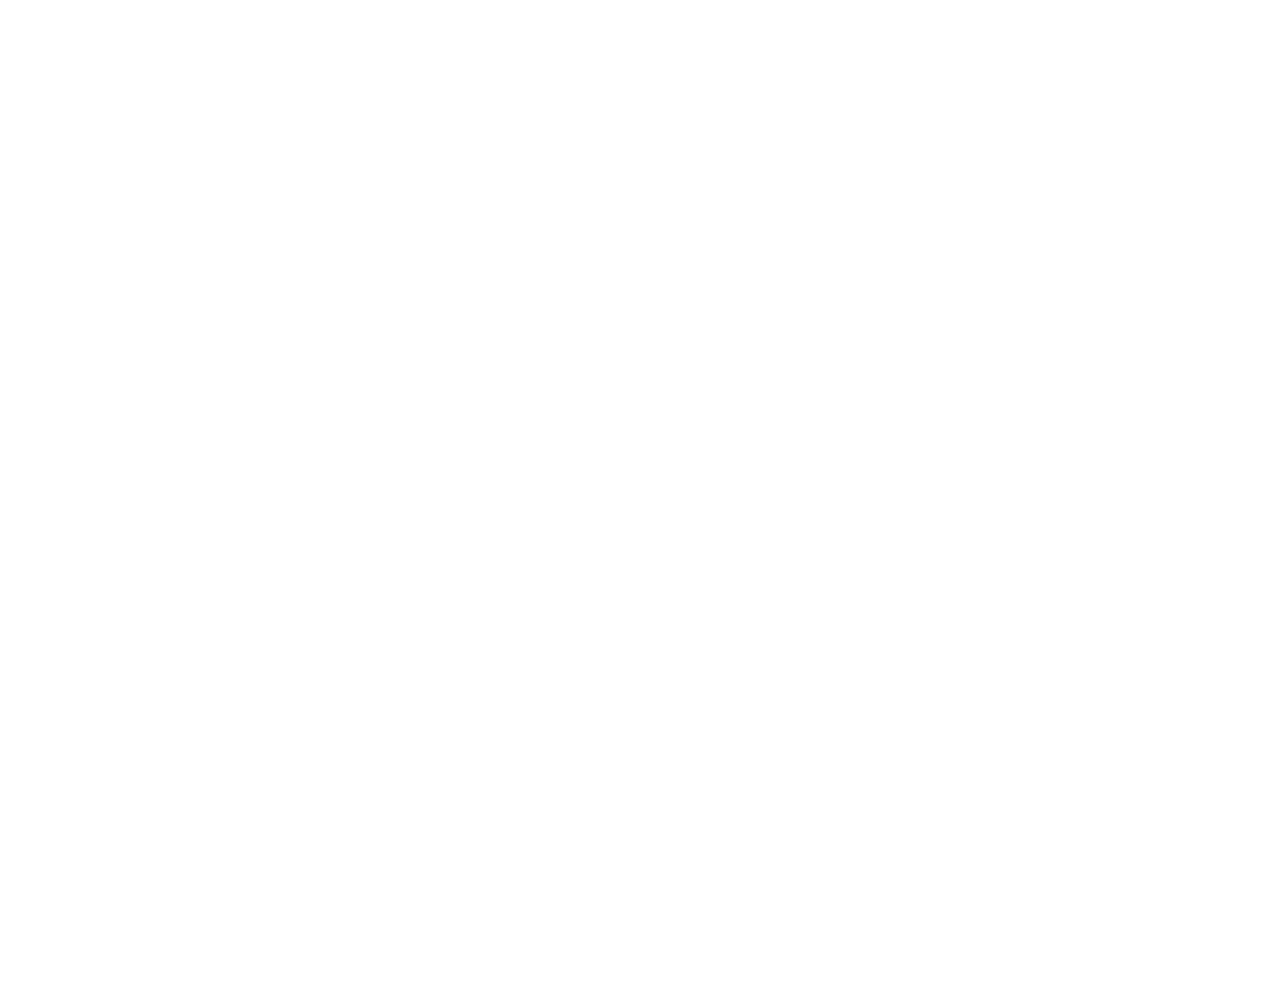 特別強化指定部・強化支援部情報サイト「Brave」誕生！日本福祉大学の特別強化指定部・強化支援部情報サイト「Brave」では、大会結果や地域活動など、学生アスリートの活躍を多角的に発信します。